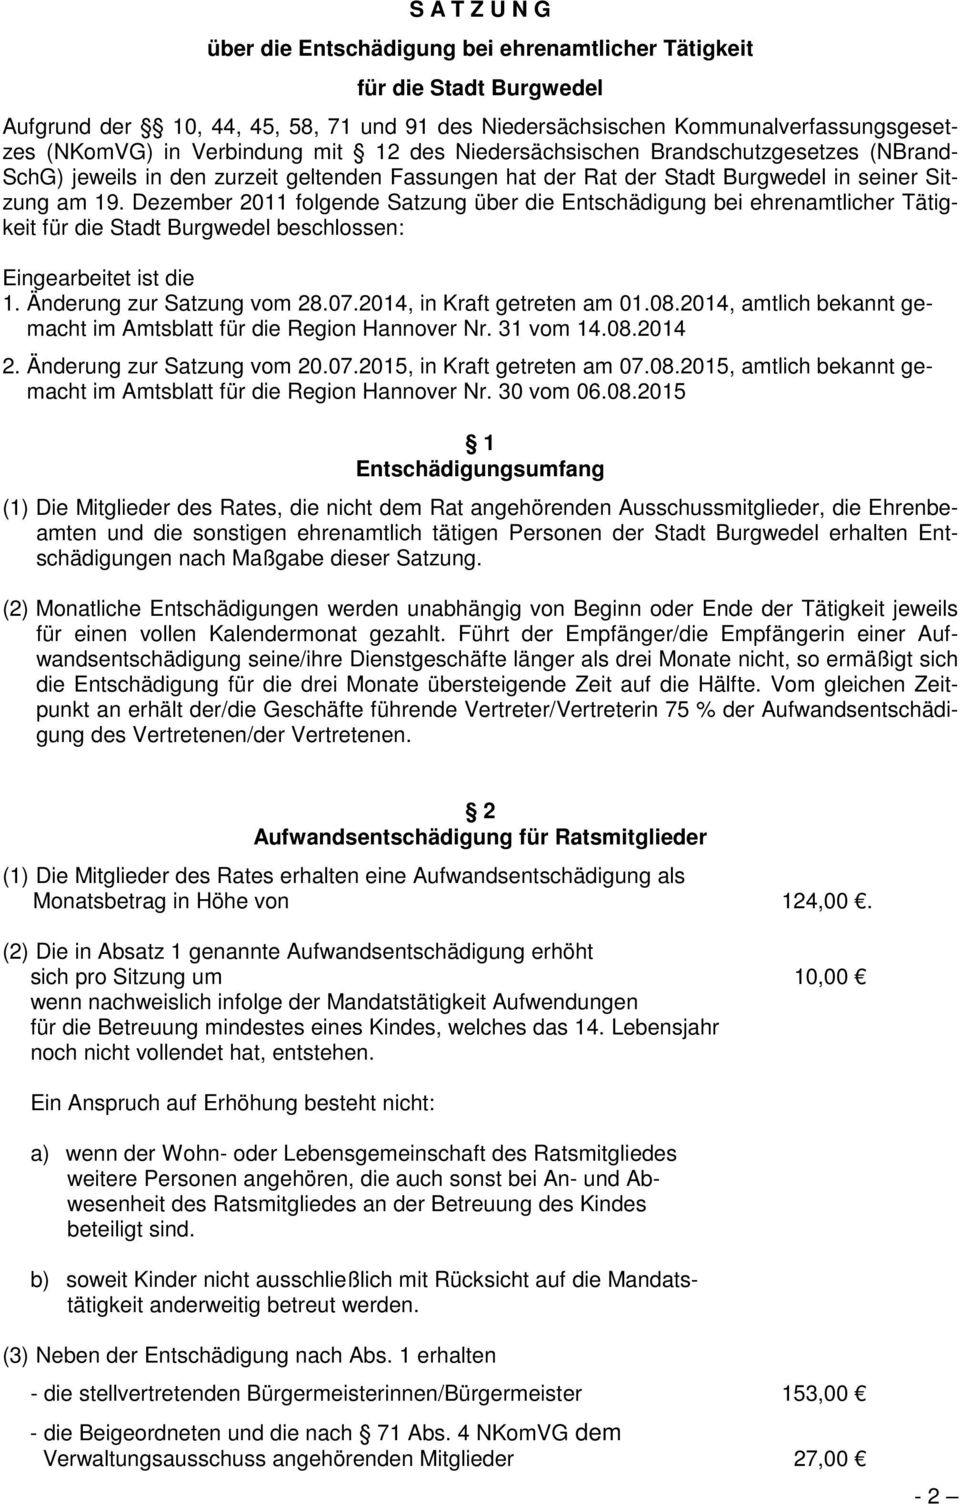 Dezember 2011 folgende Satzung über die Entschädigung bei ehrenamtlicher Tätigkeit für die Stadt Burgwedel beschlossen: Eingearbeitet ist die 1. Änderung zur Satzung vom 28.07.